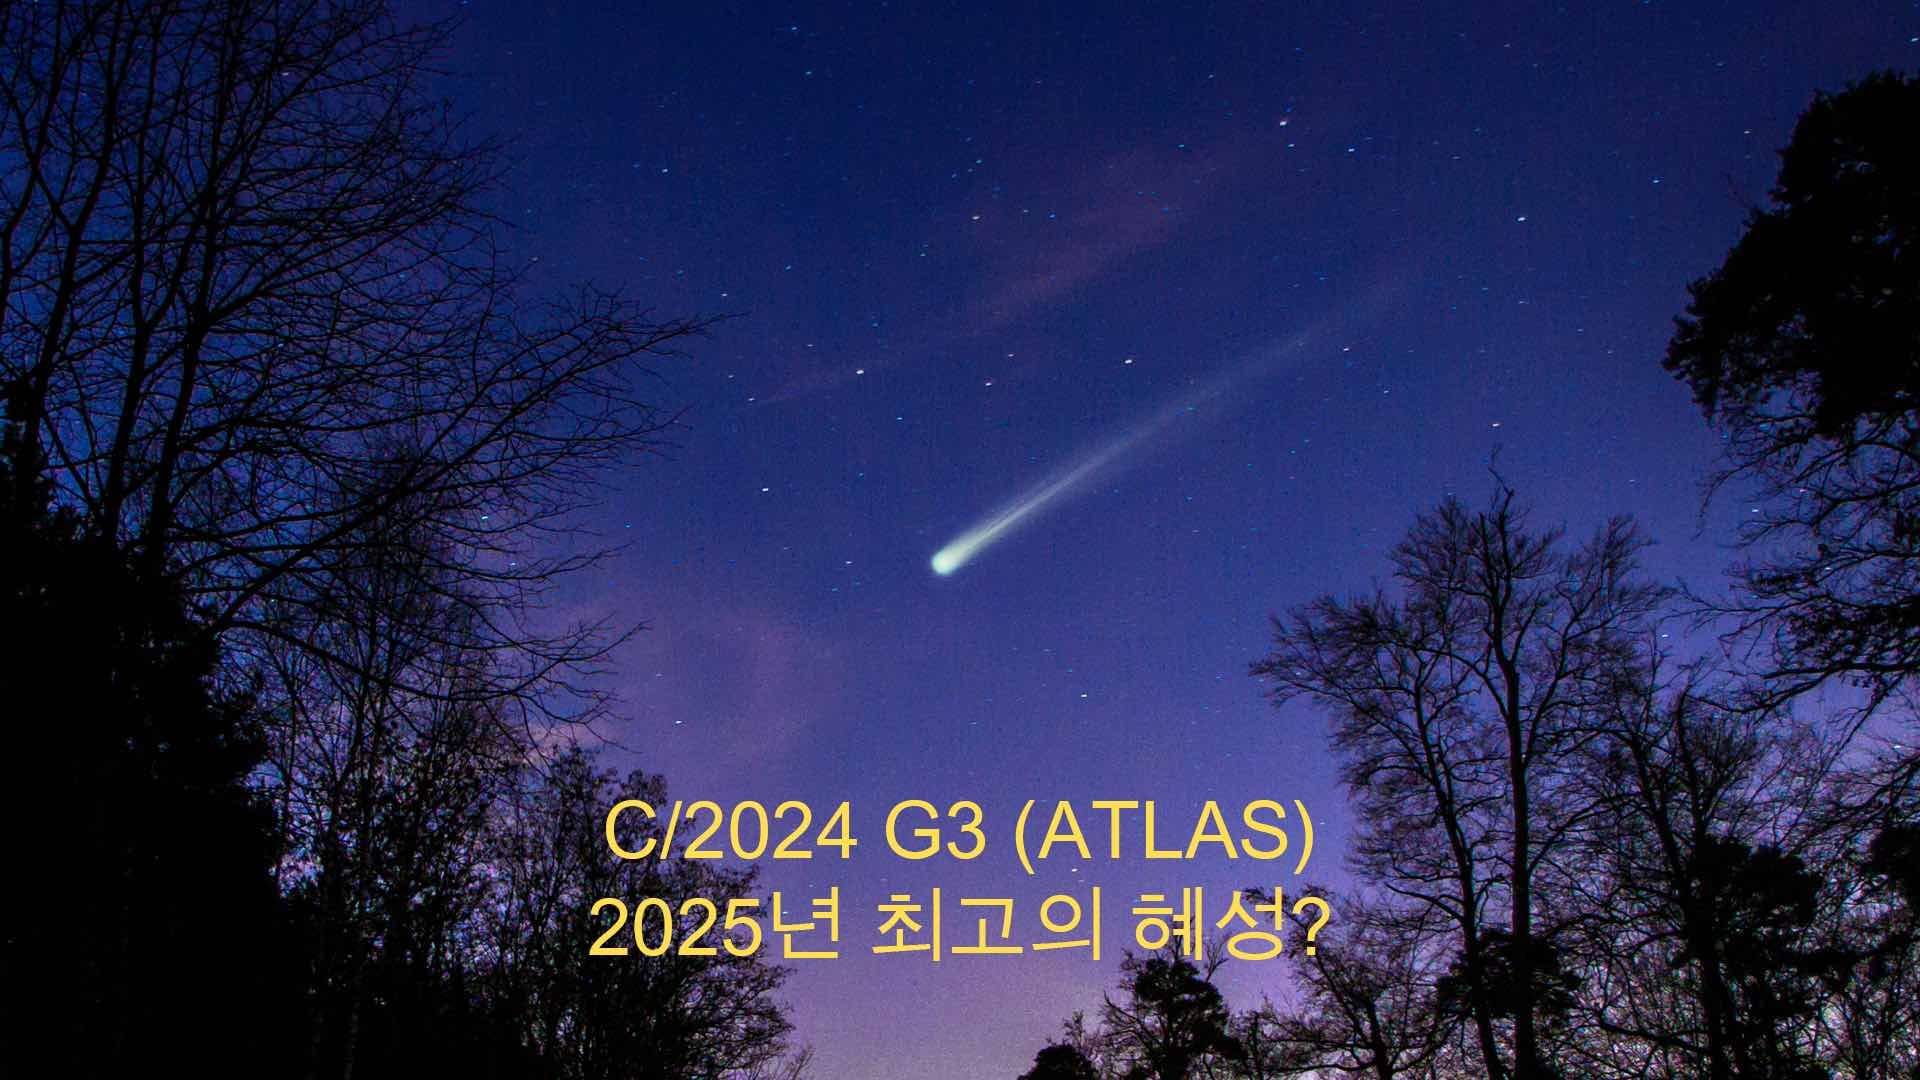 Comet C/2024 G3 (ATLAS)